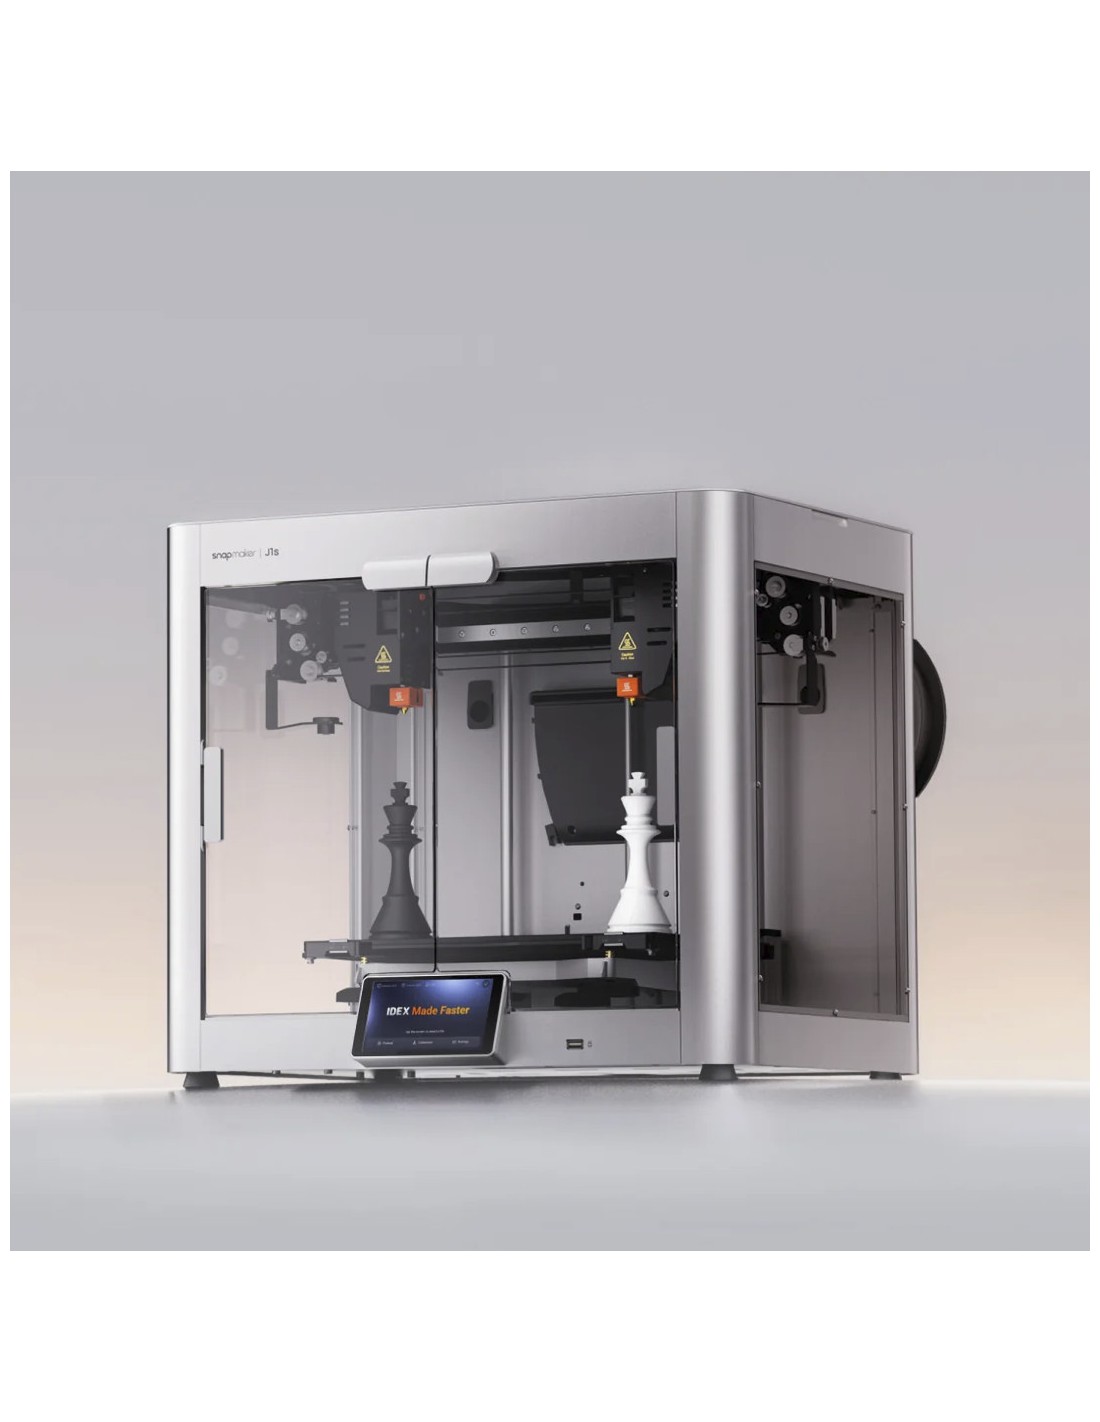 Snapmaker J1 - 3D-Drucker